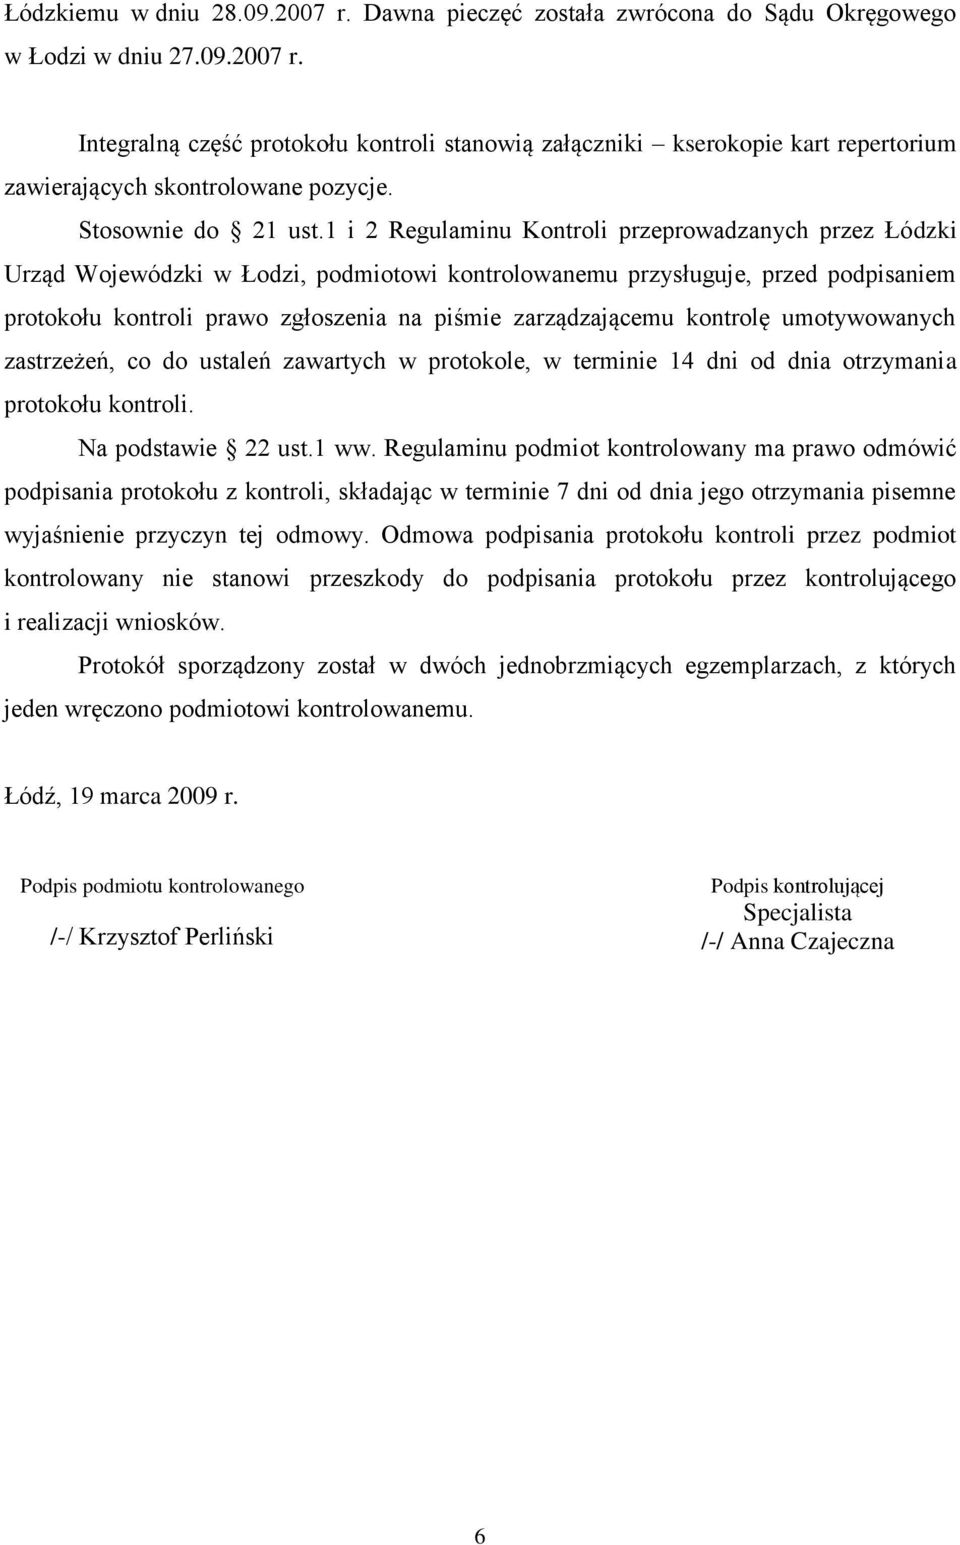 1 i 2 Regulaminu Kontroli przeprowadzanych przez Łódzki Urząd Wojewódzki w Łodzi, podmiotowi kontrolowanemu przysługuje, przed podpisaniem protokołu kontroli prawo zgłoszenia na piśmie zarządzającemu